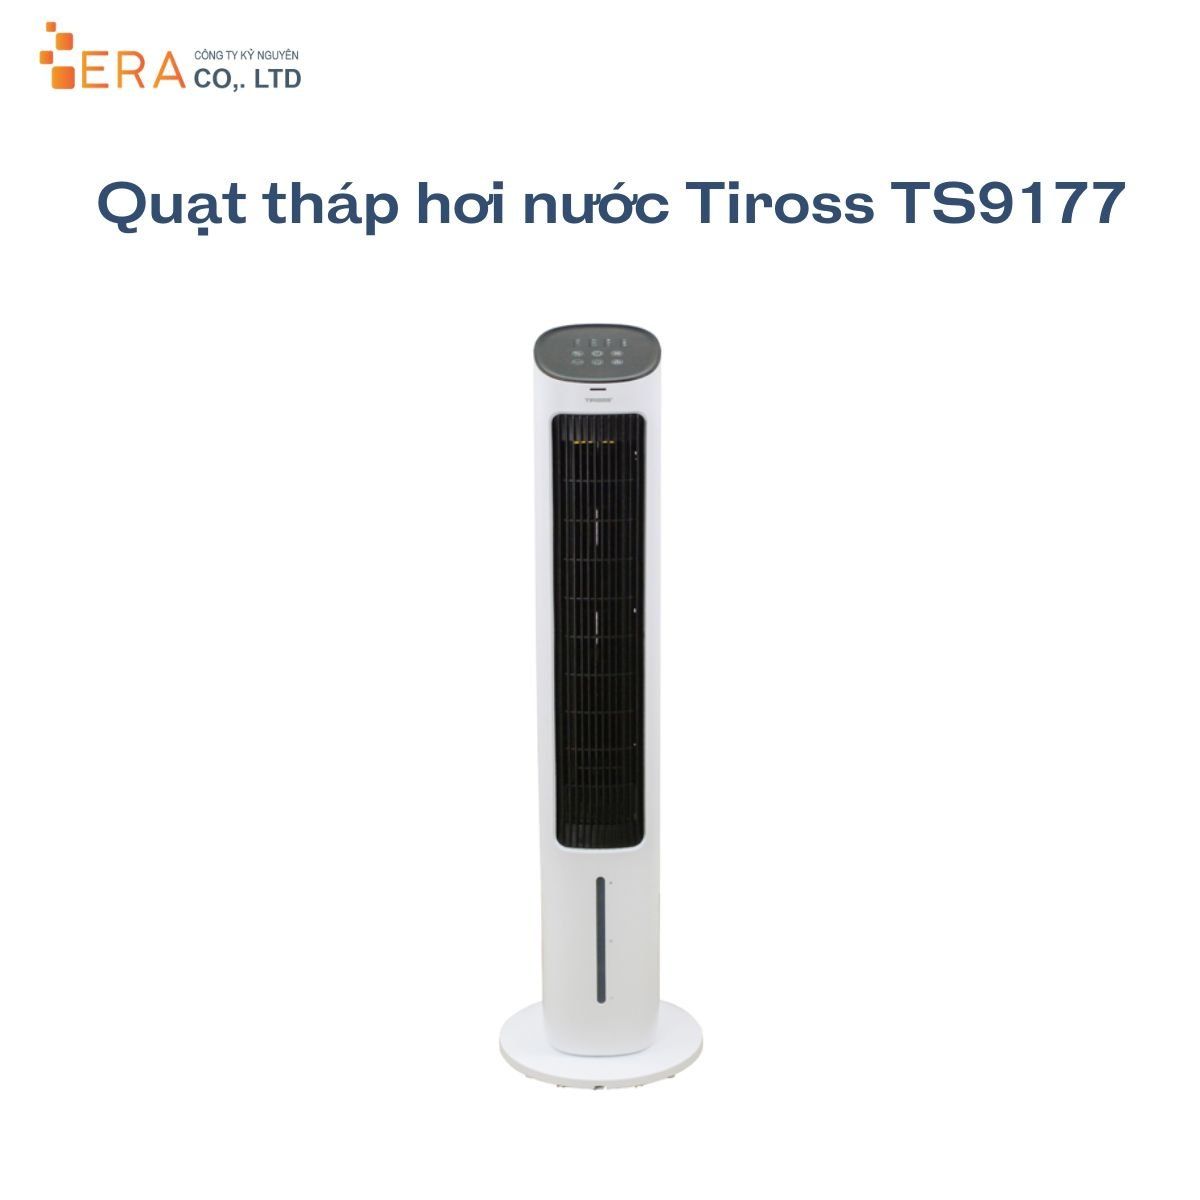  Quạt tháp hơi nước Tiross TS9177 